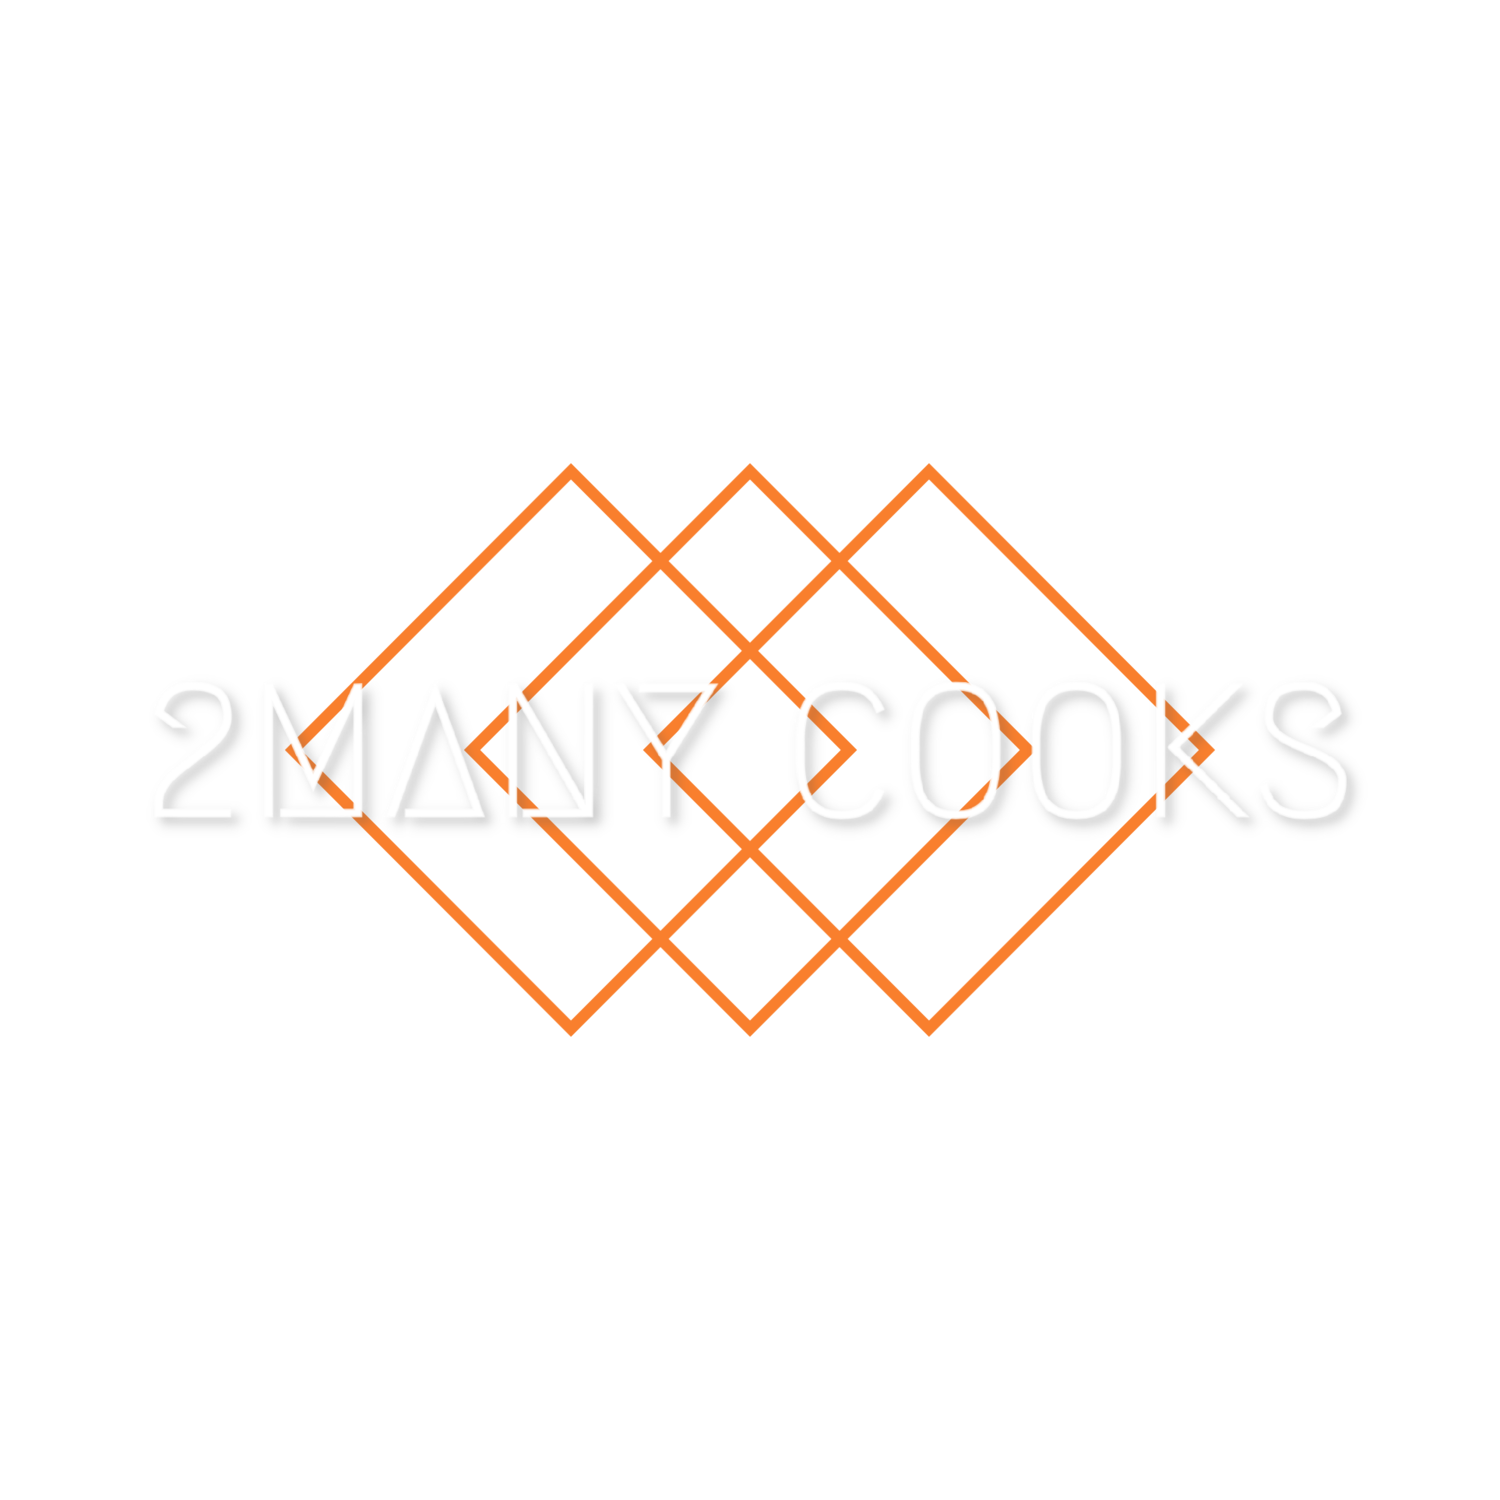 2Many Cooks